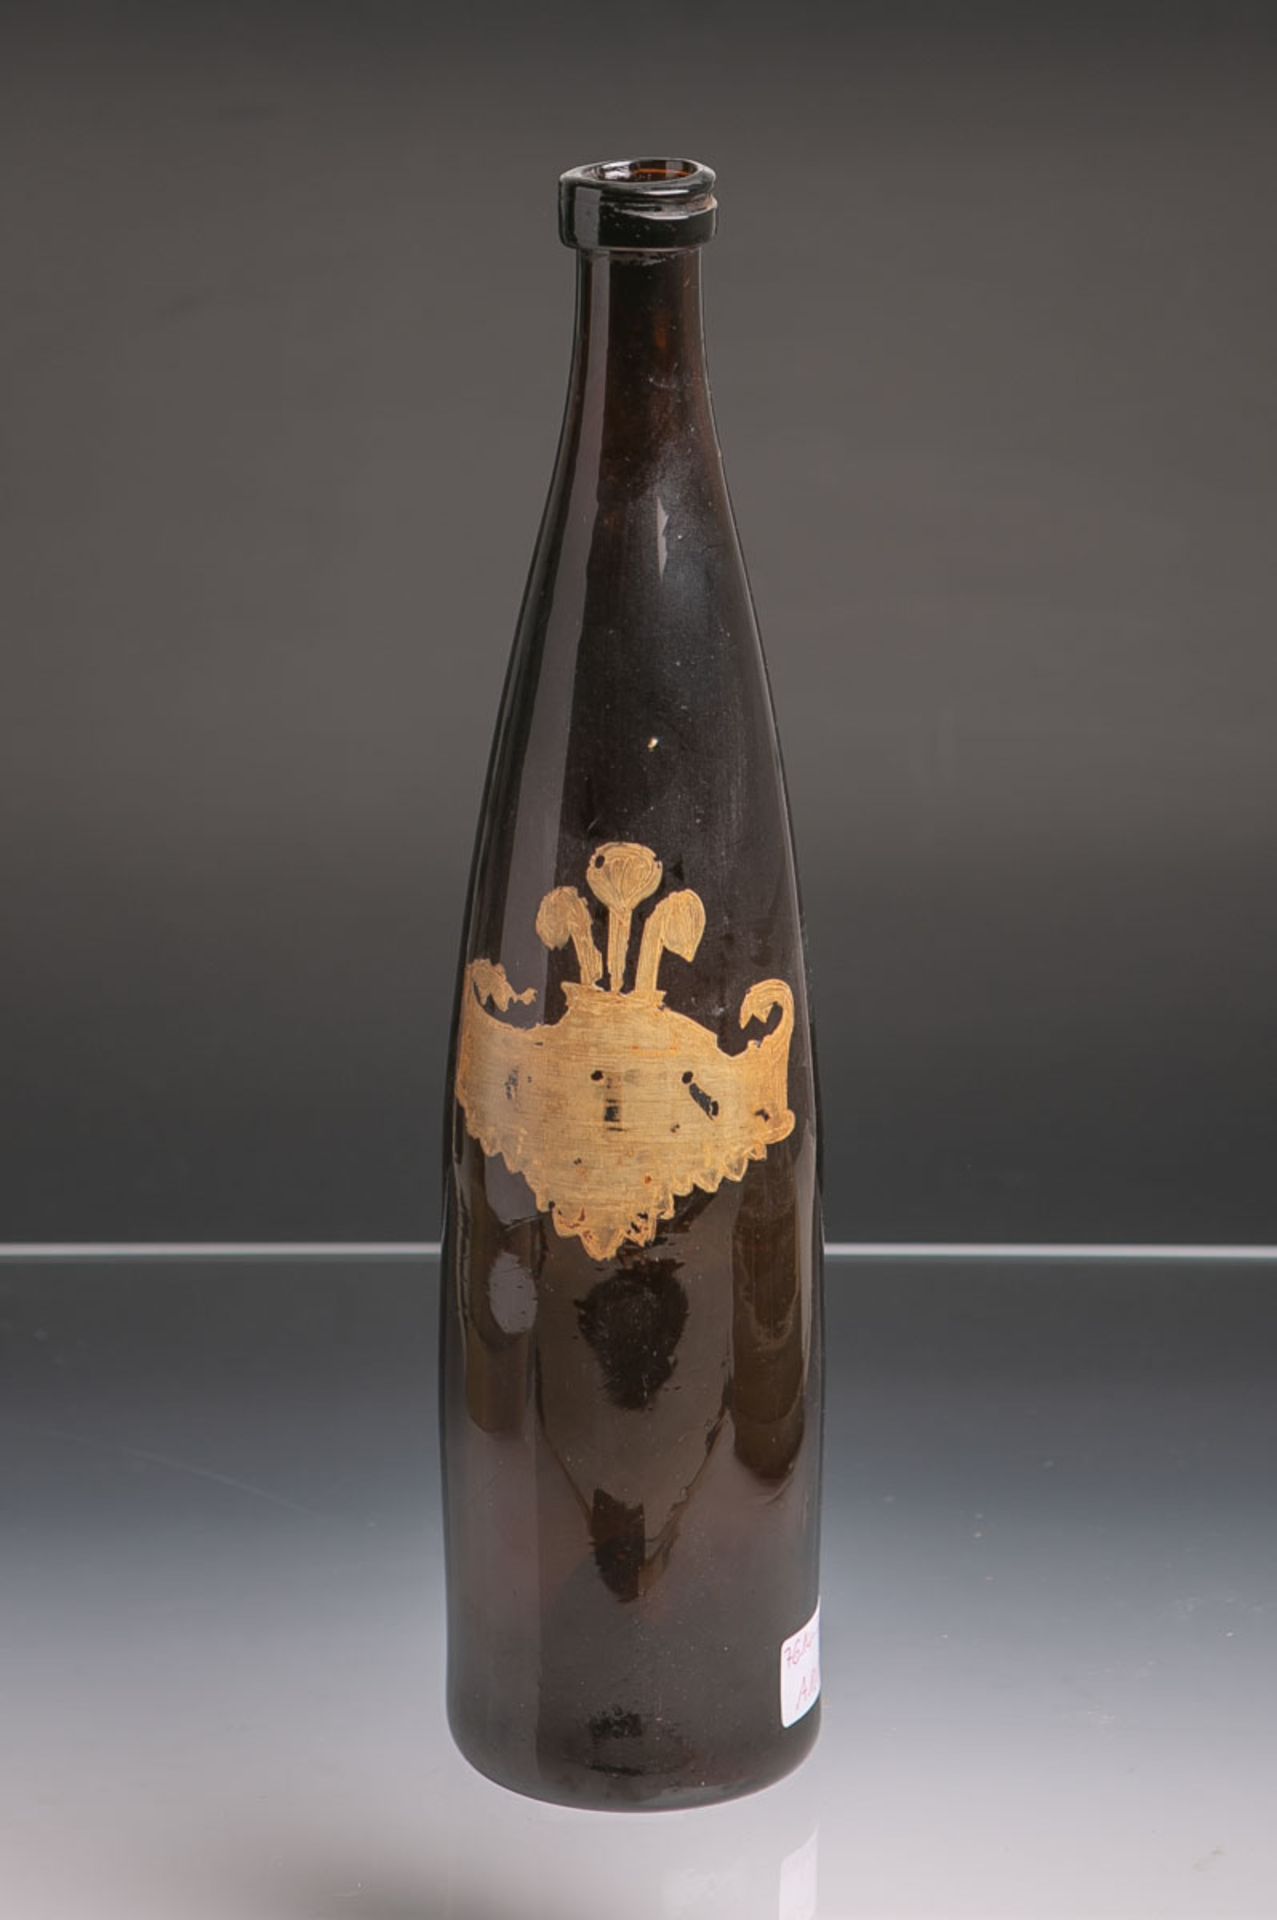 Historische Weinflasche (wohl 18./19. Jh.), braunes Glas mundgeblasen, hochgestochener Boden, Abriss